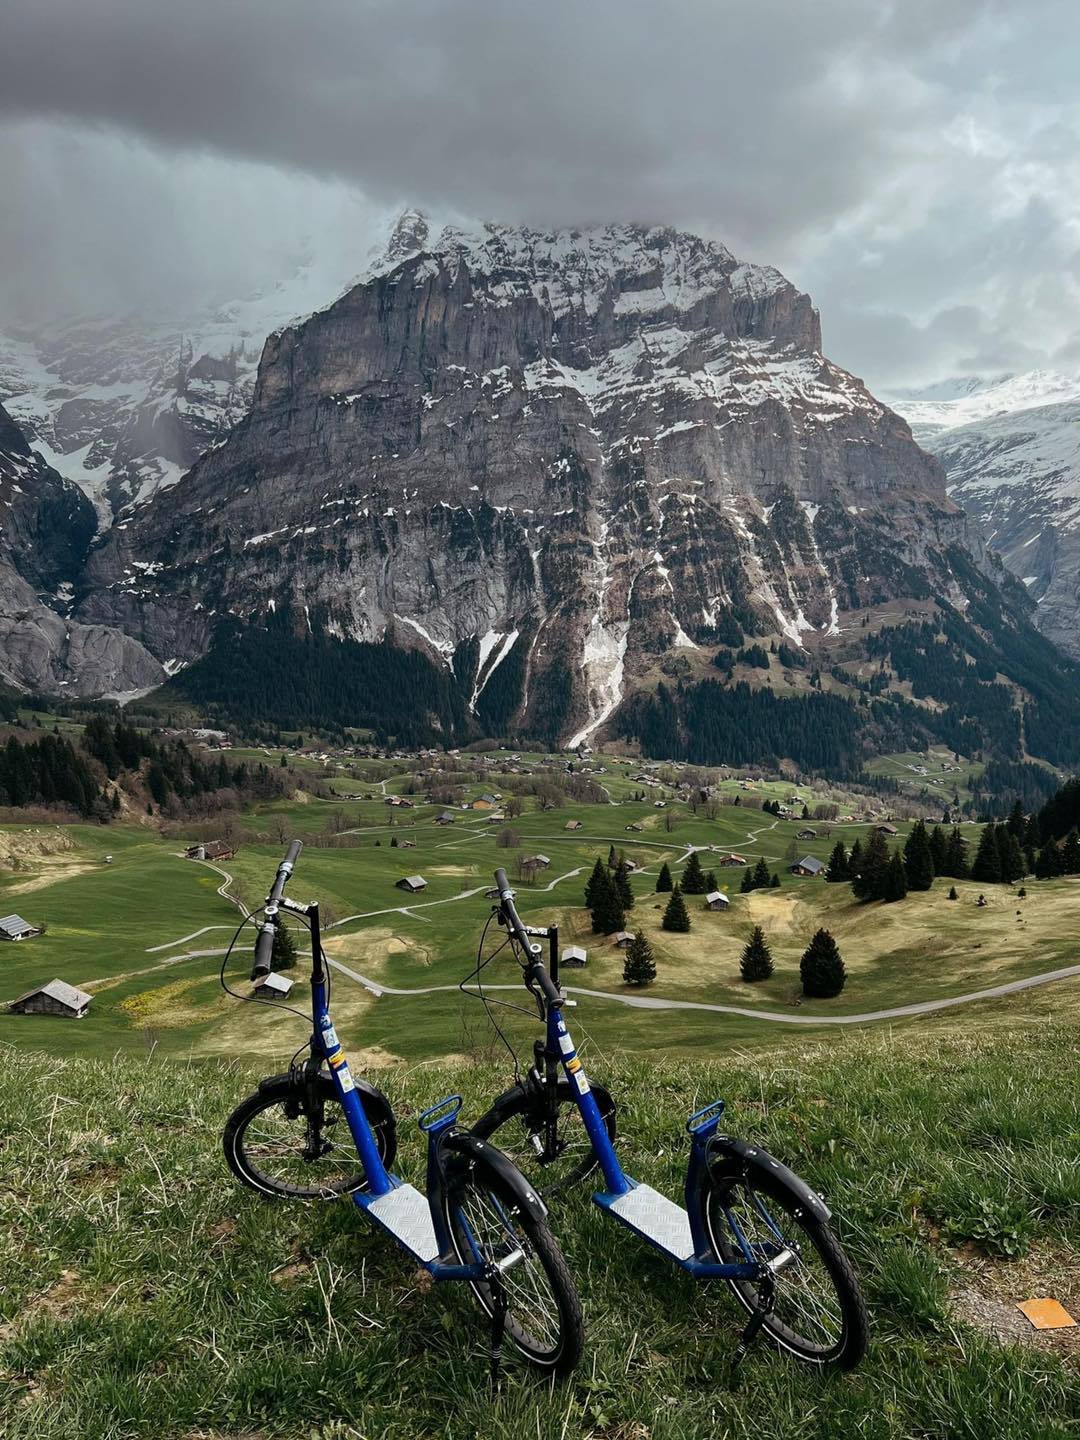 Bộ ảnh du lịch Thụy Sĩ đẹp như tranh vẽ của cặp đôi 9X khiến dân ‘ghiền’ du lịch mê tít